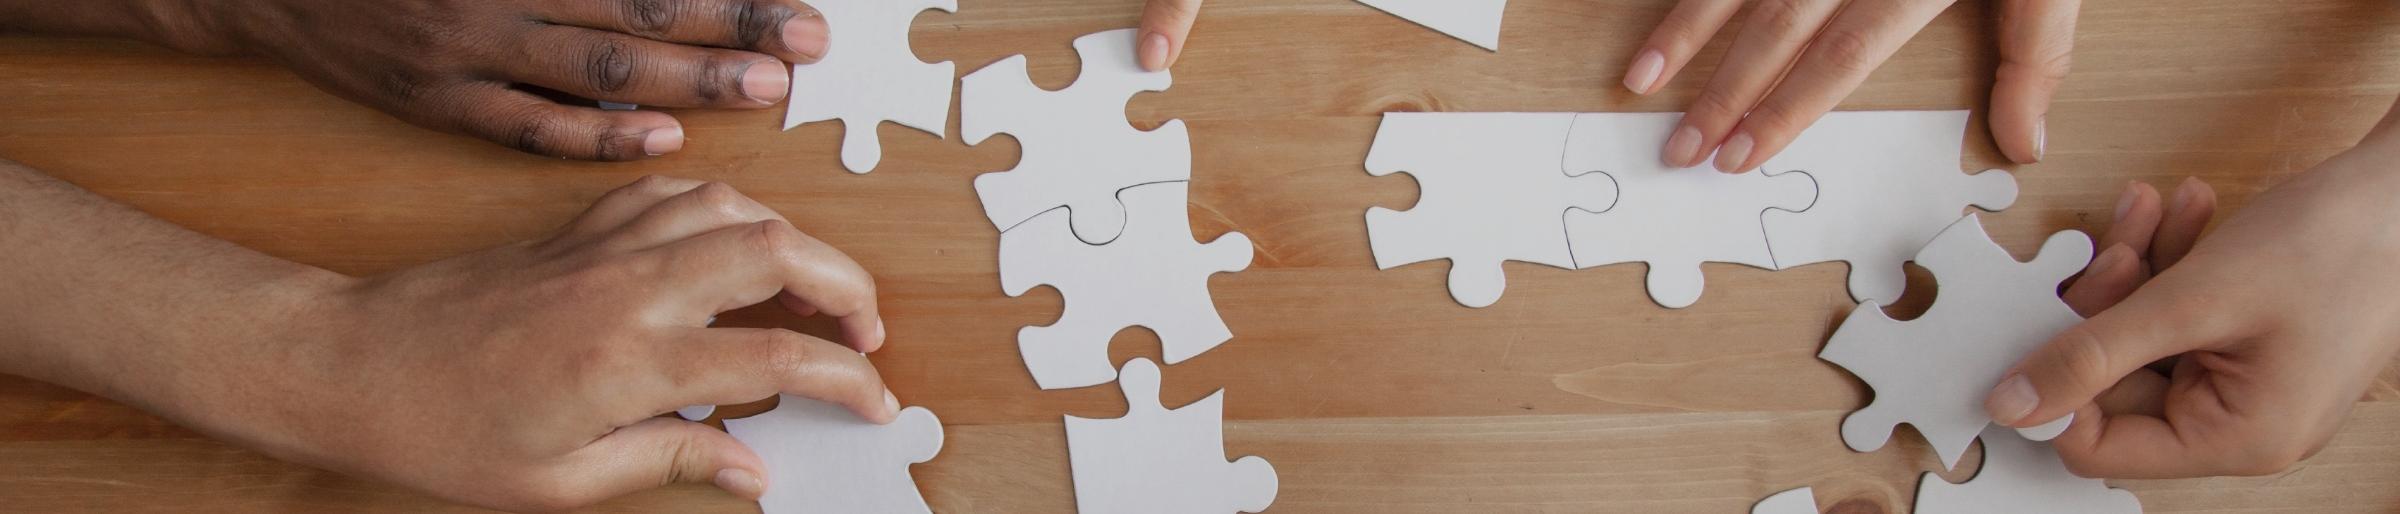 Kooperation: gemeinsam ein Puzzle legen - gemeinsam ein Problem lösen